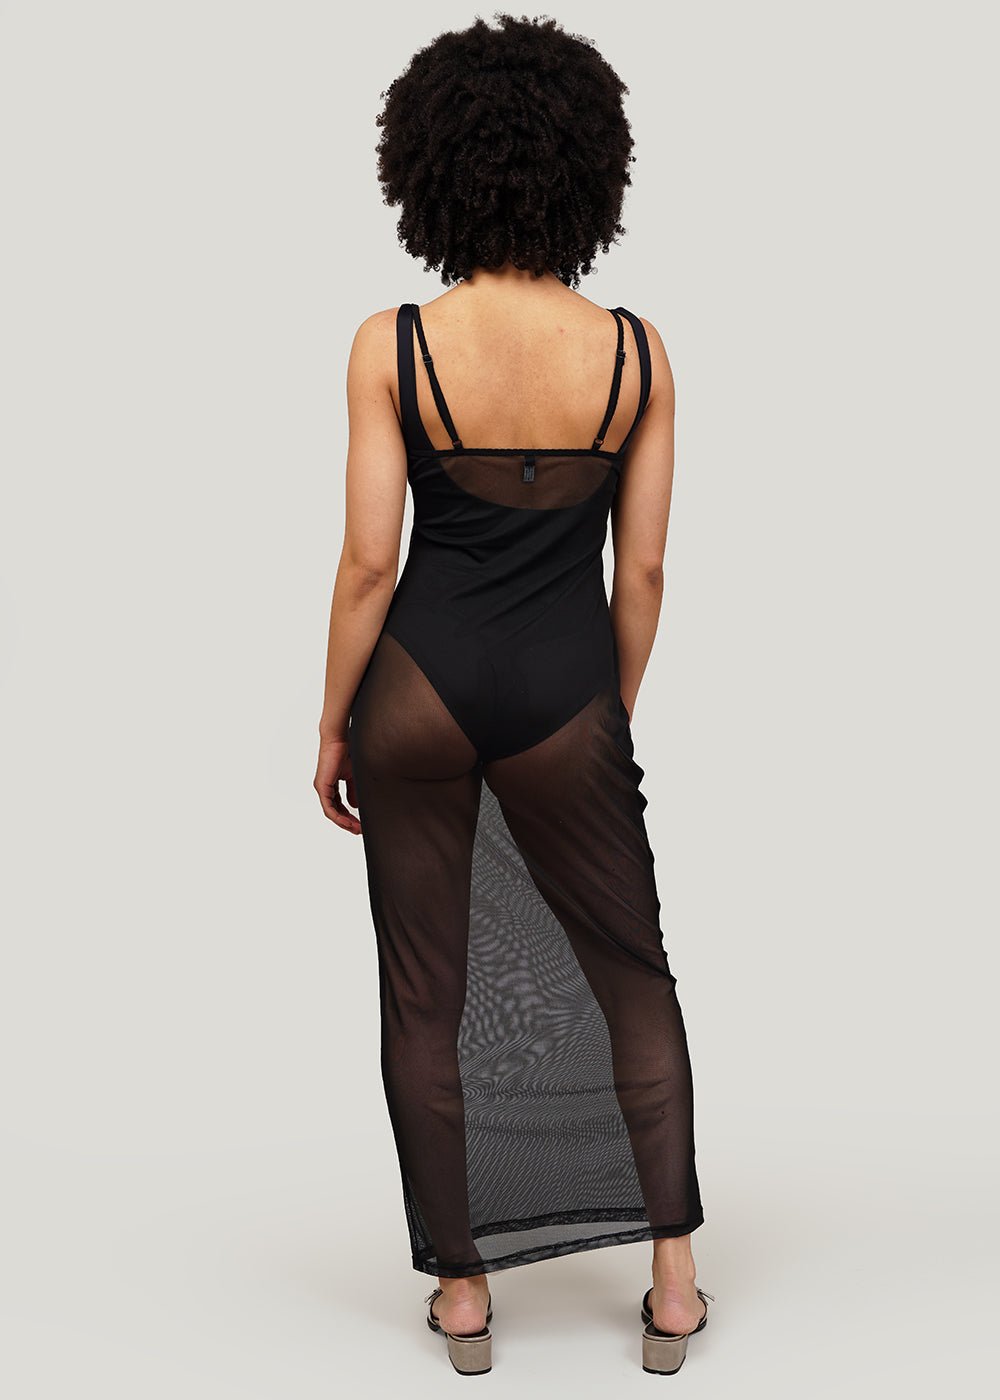 Kye Intimates Black Overlay Slip Dress - New Classics Studios Sustainable Ethical Fashion Canada